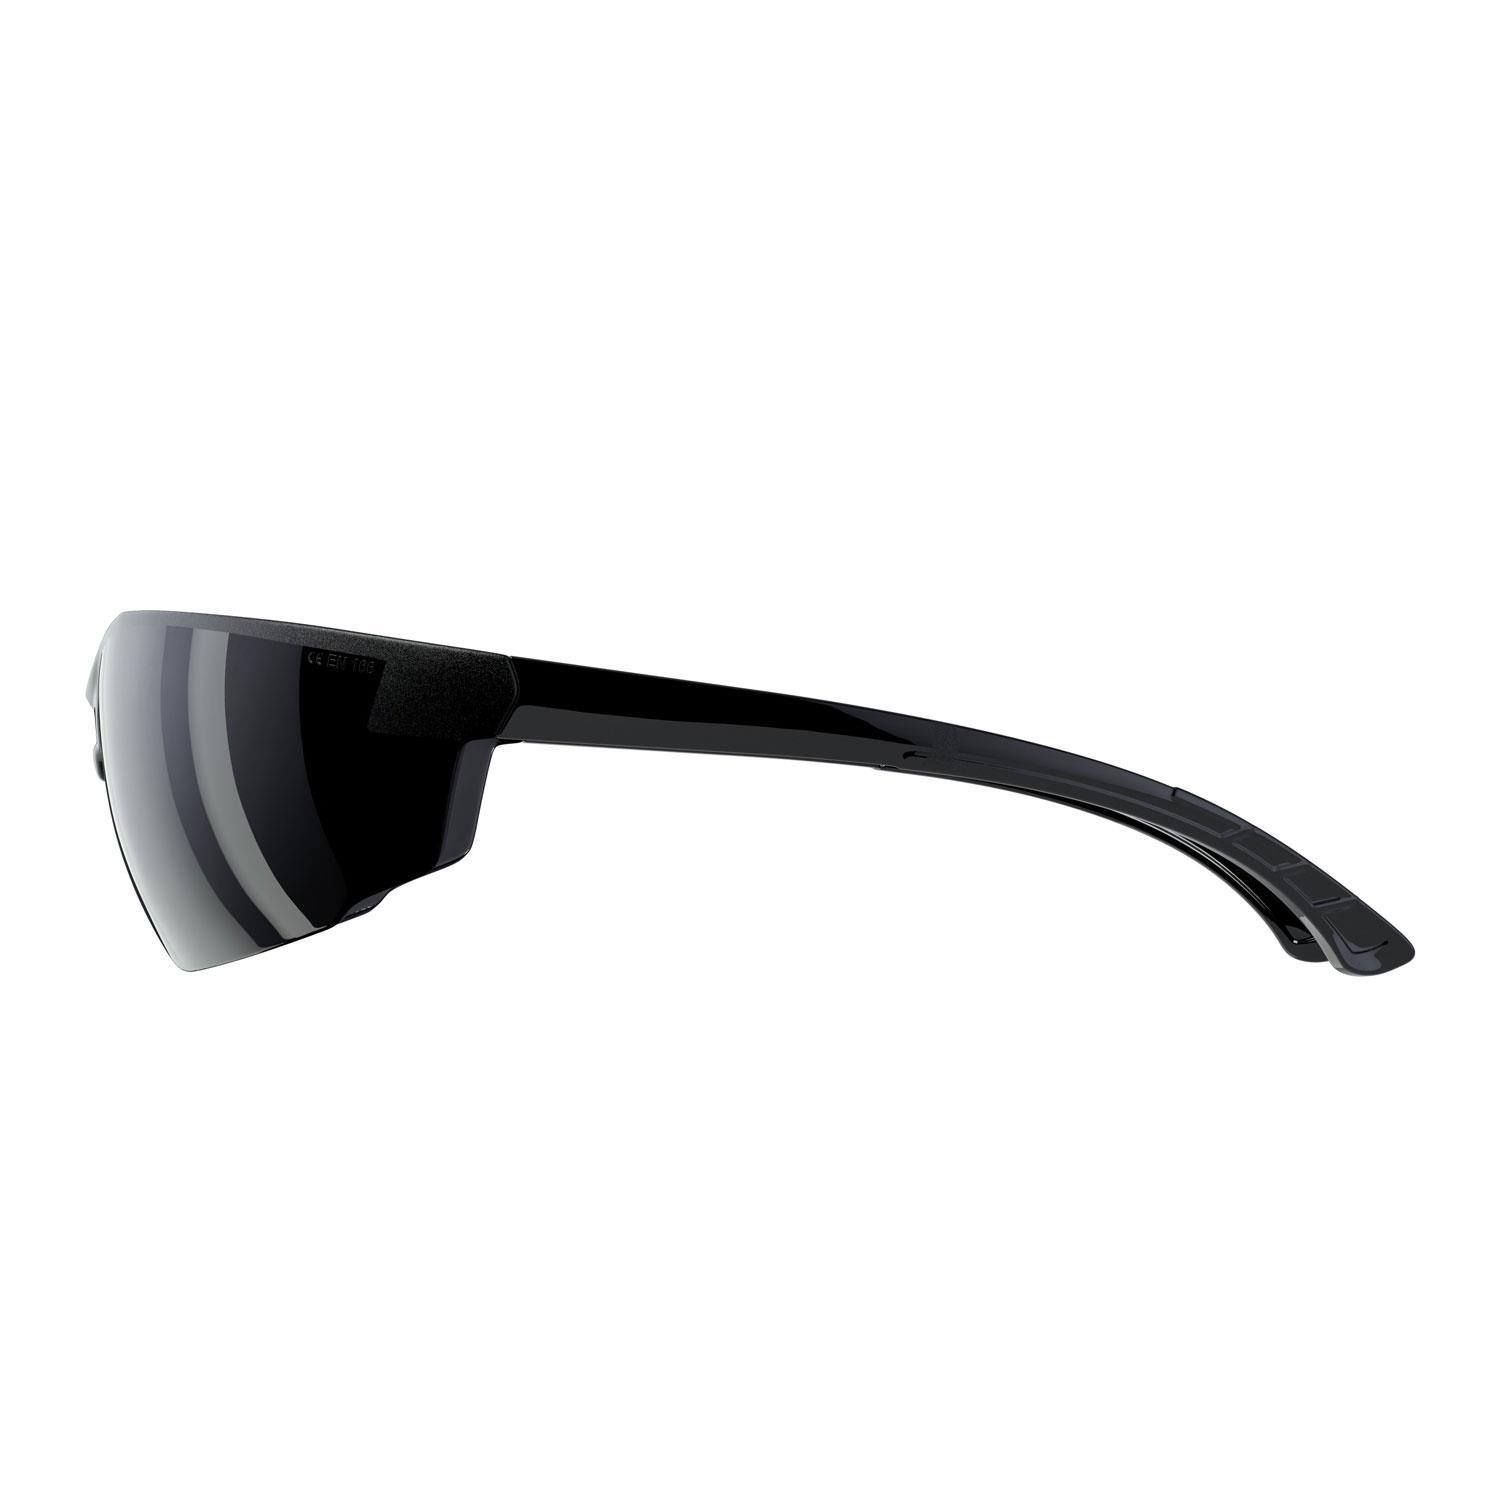 İş Güvenlik Gözlüğü UV Koruyucu Silikonlu Kaynak Gözlük S1100 Siyah 12 Adet